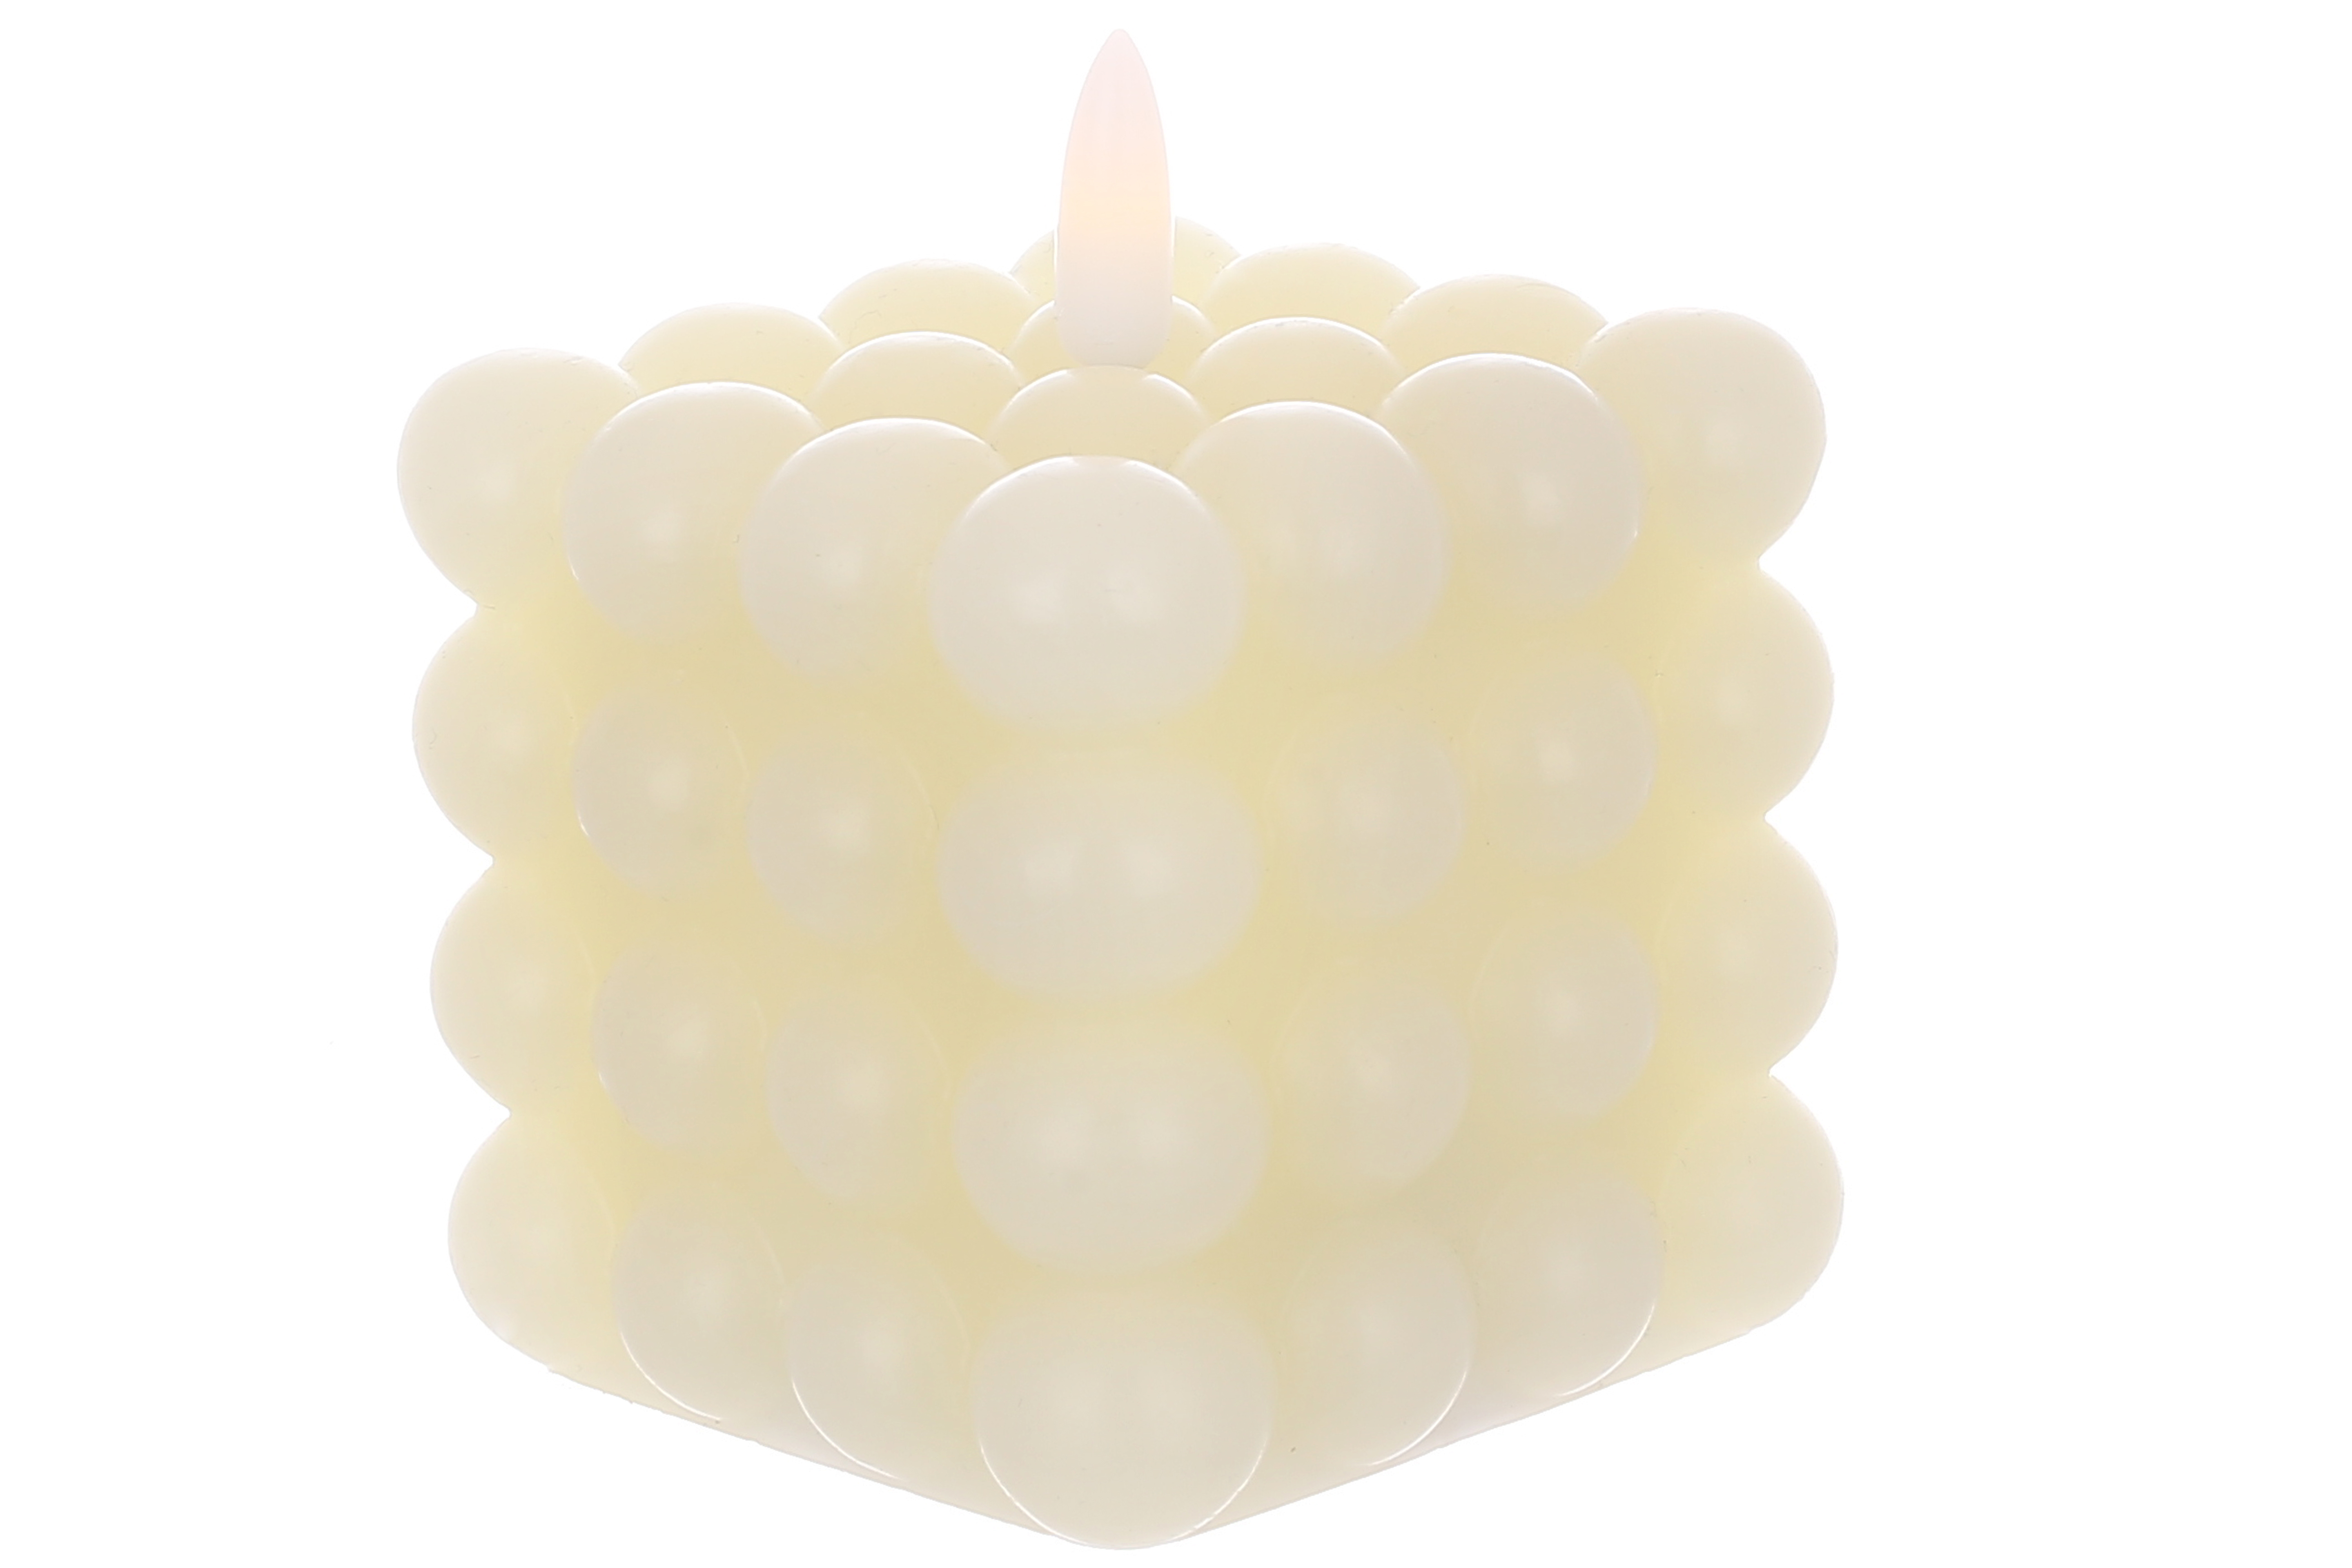 Світлодіодна воскова свічка Bauble з 3D полум'ям 7.5*9.5см (2хААА не входять до комплекту), тепле біле світло, колір - vanilla 882-149 оптом